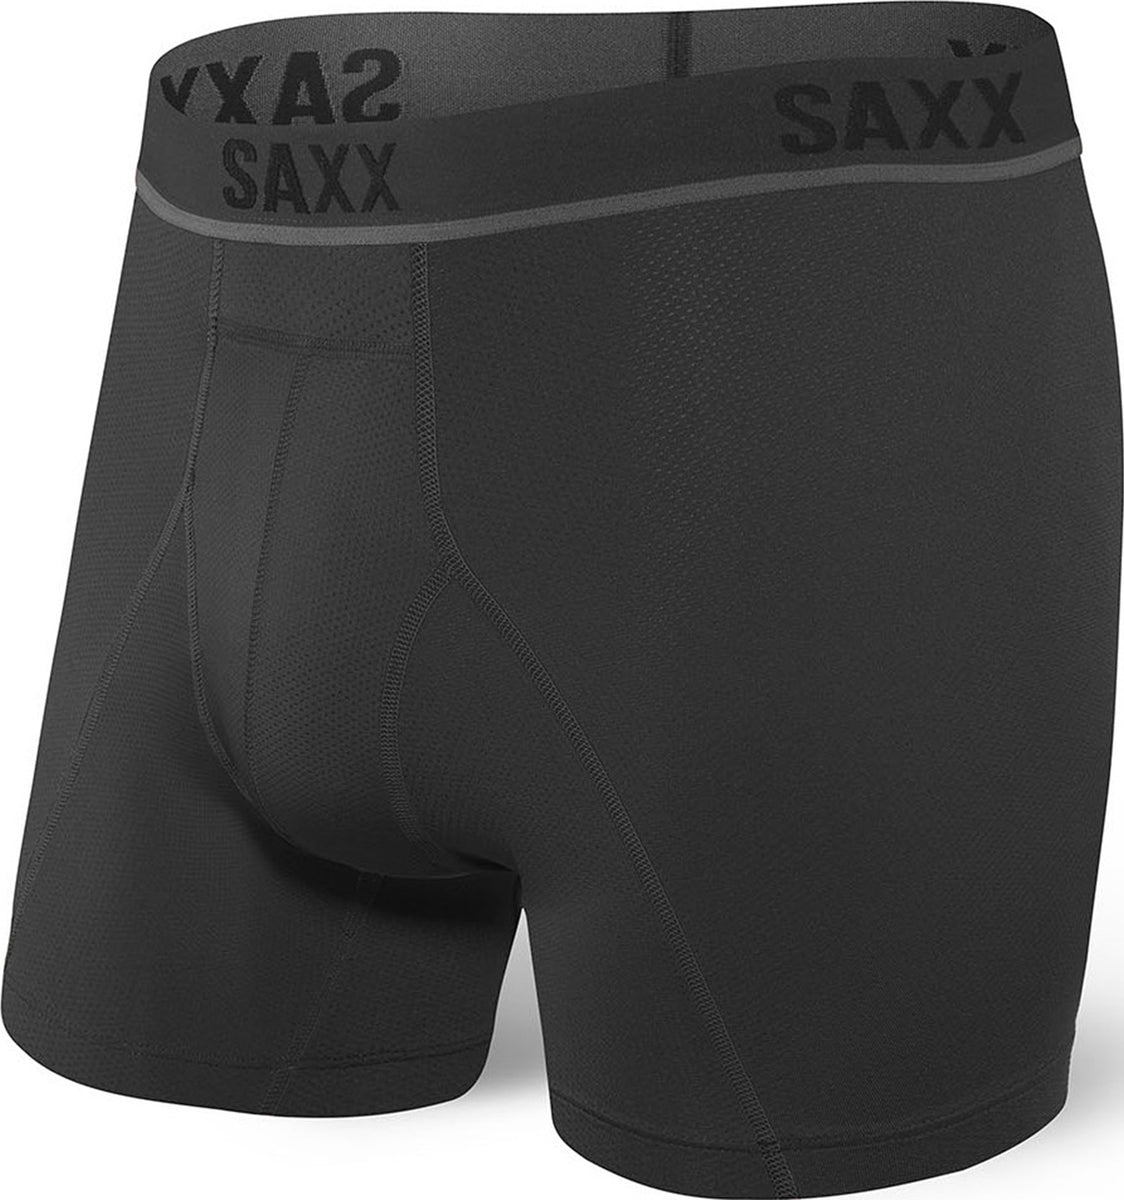 SAXX Kinetic Hd Boxer Brief - Men's | Altitude Sports